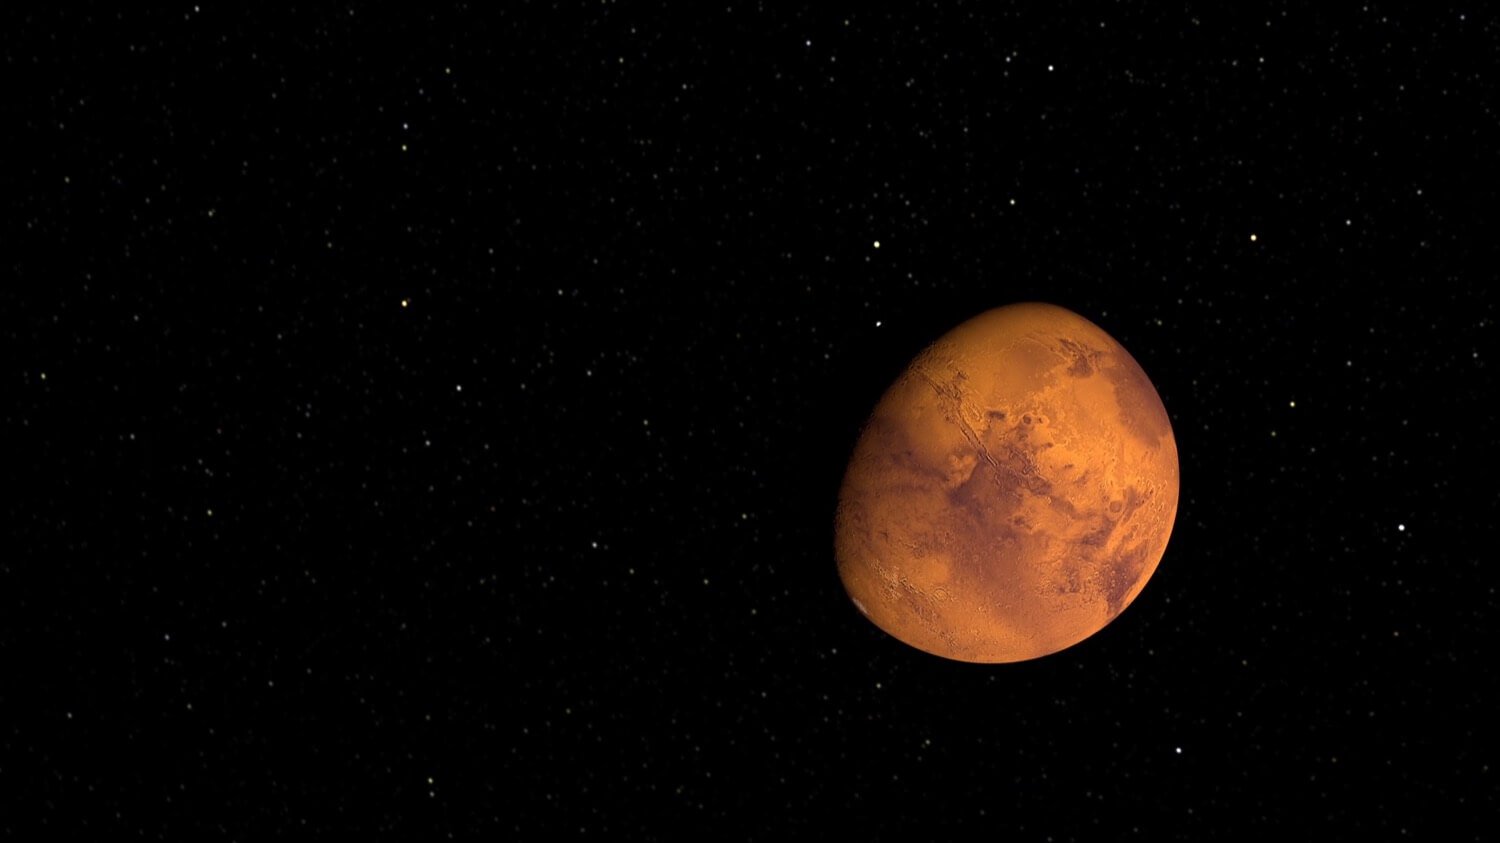 الأسابيع المقبلة المريخ سوف تكون رؤيتها بالعين المجردة